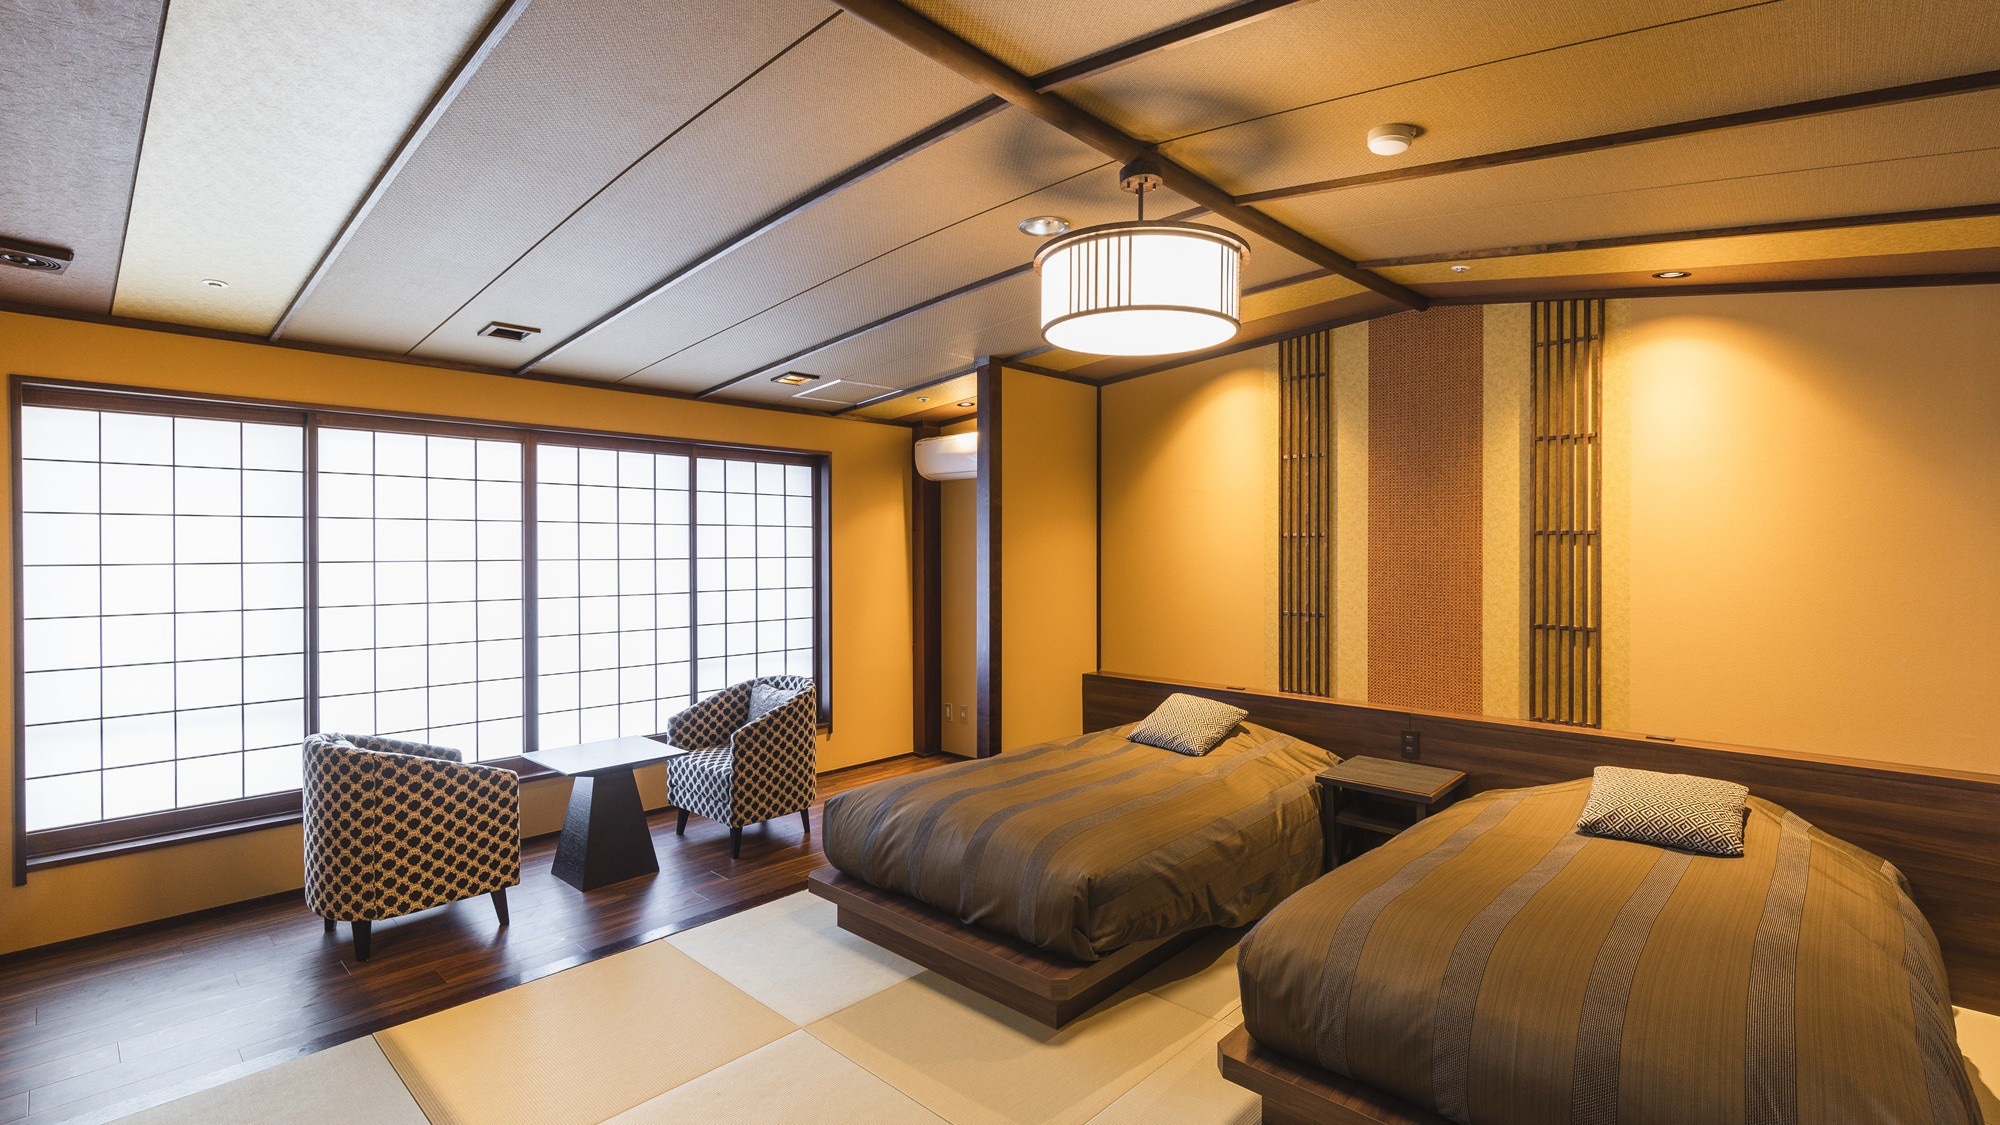 【일본 모던 트윈】2021년 4월 리뉴얼! 일본과 서양의 쾌적함을 겸비한 풍정 있는 방.